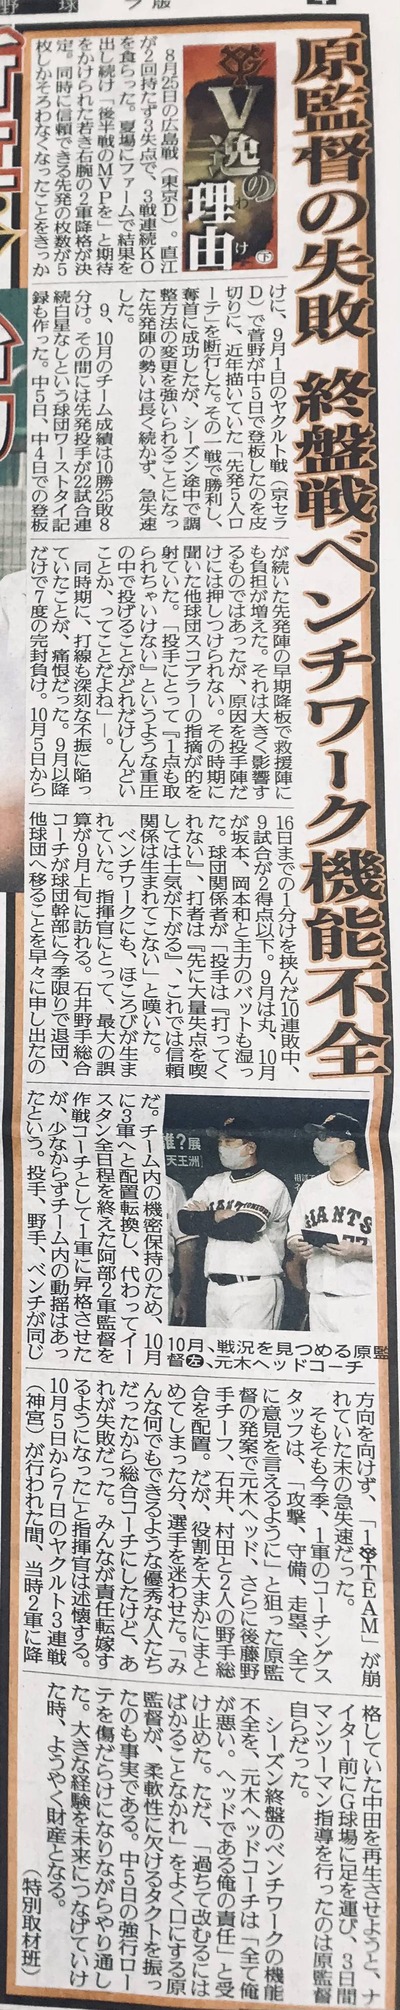 【速報】石井琢朗さん、シーズン中に退団を申し出ていた